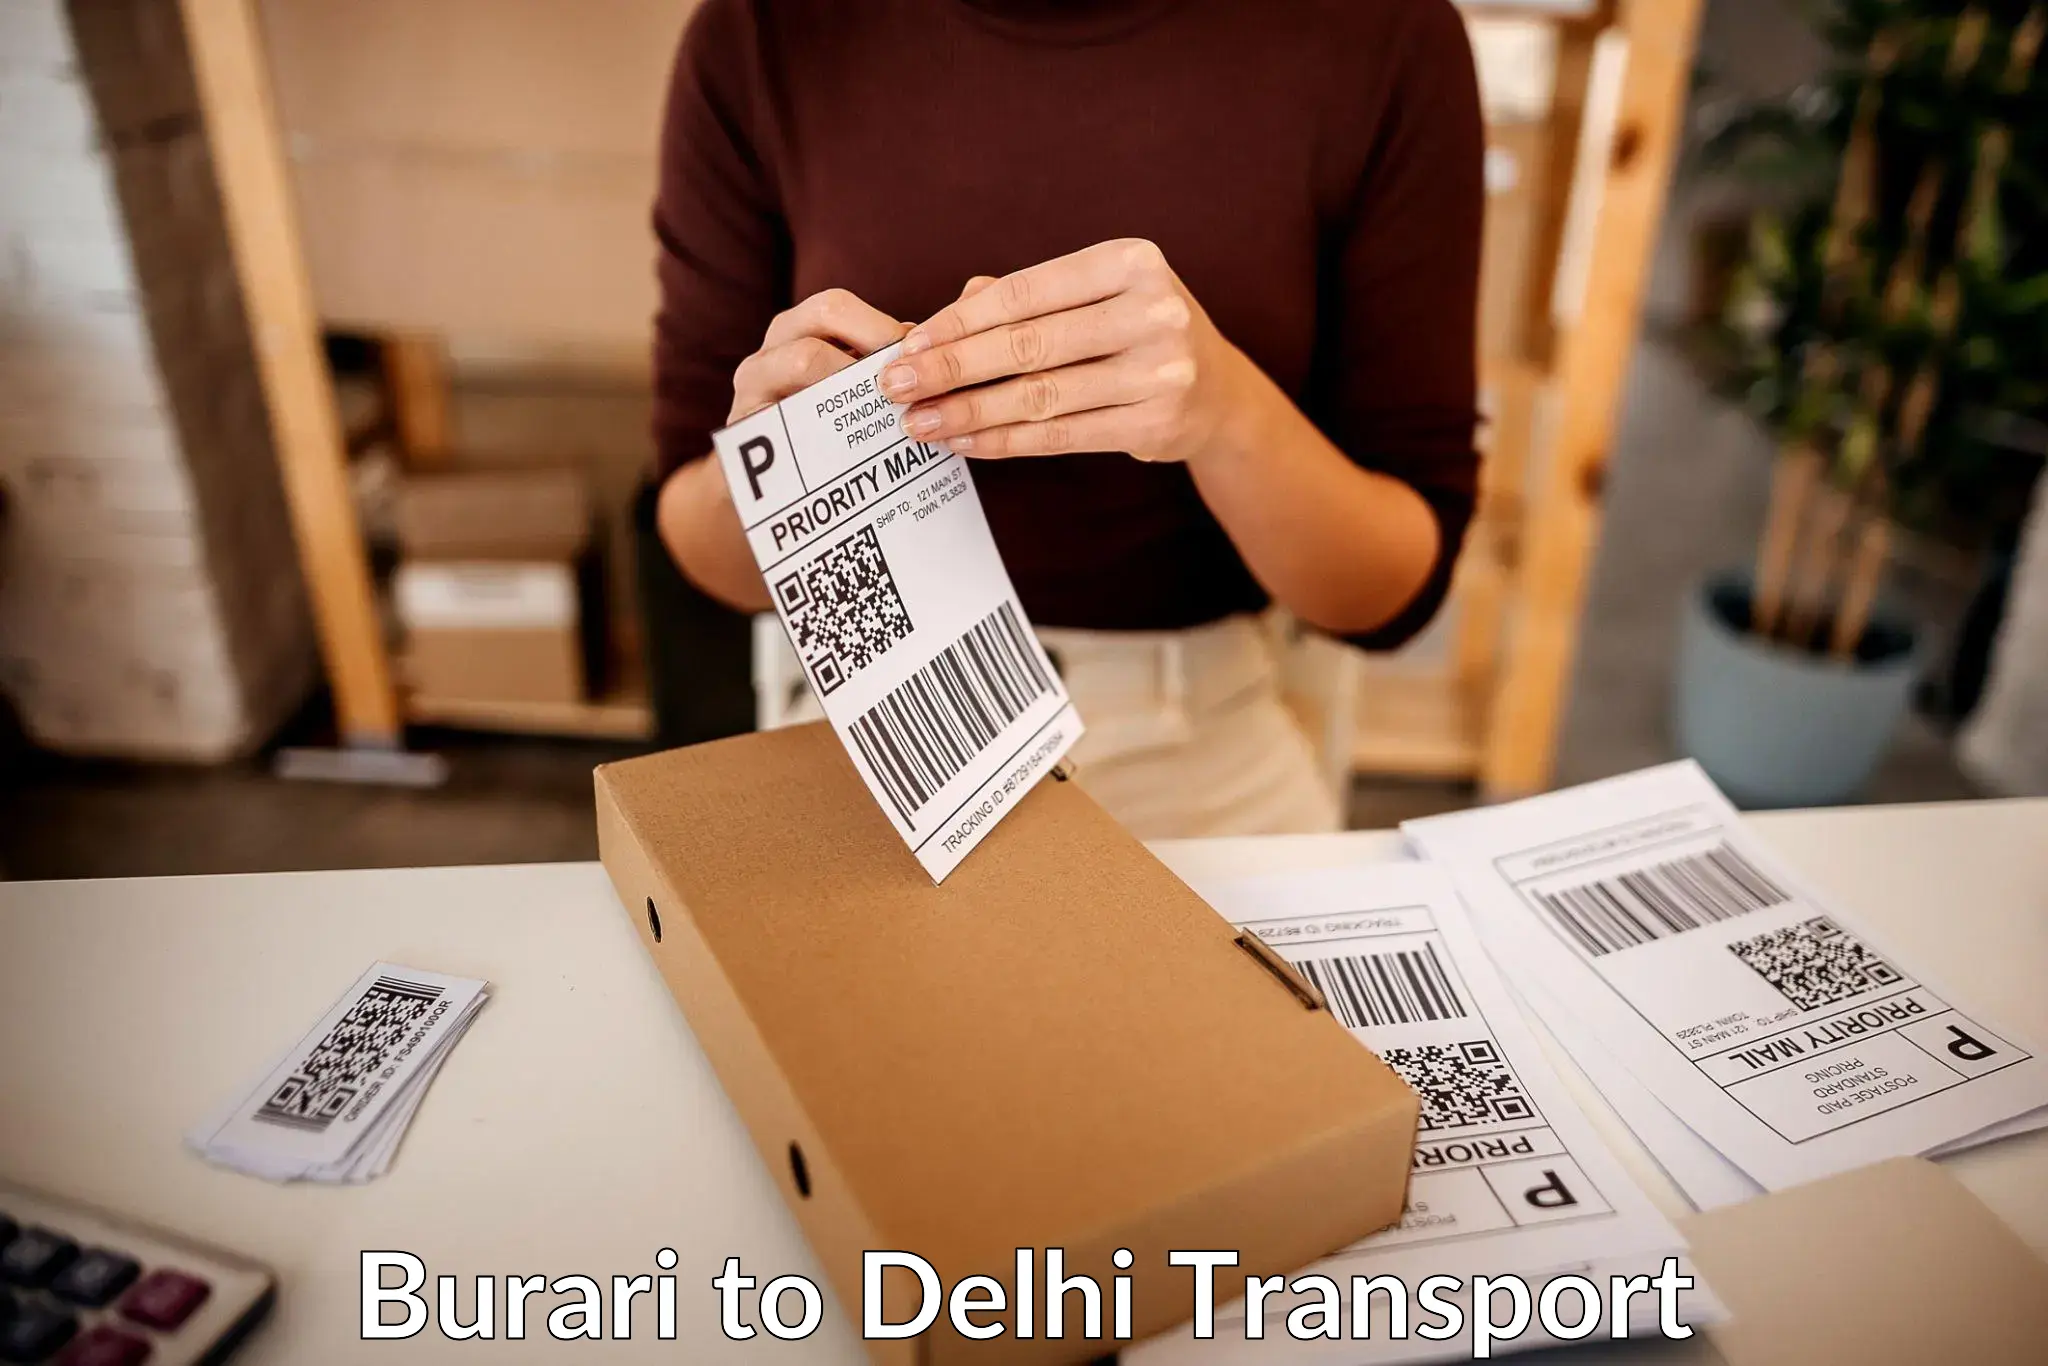 Container transport service Burari to East Delhi